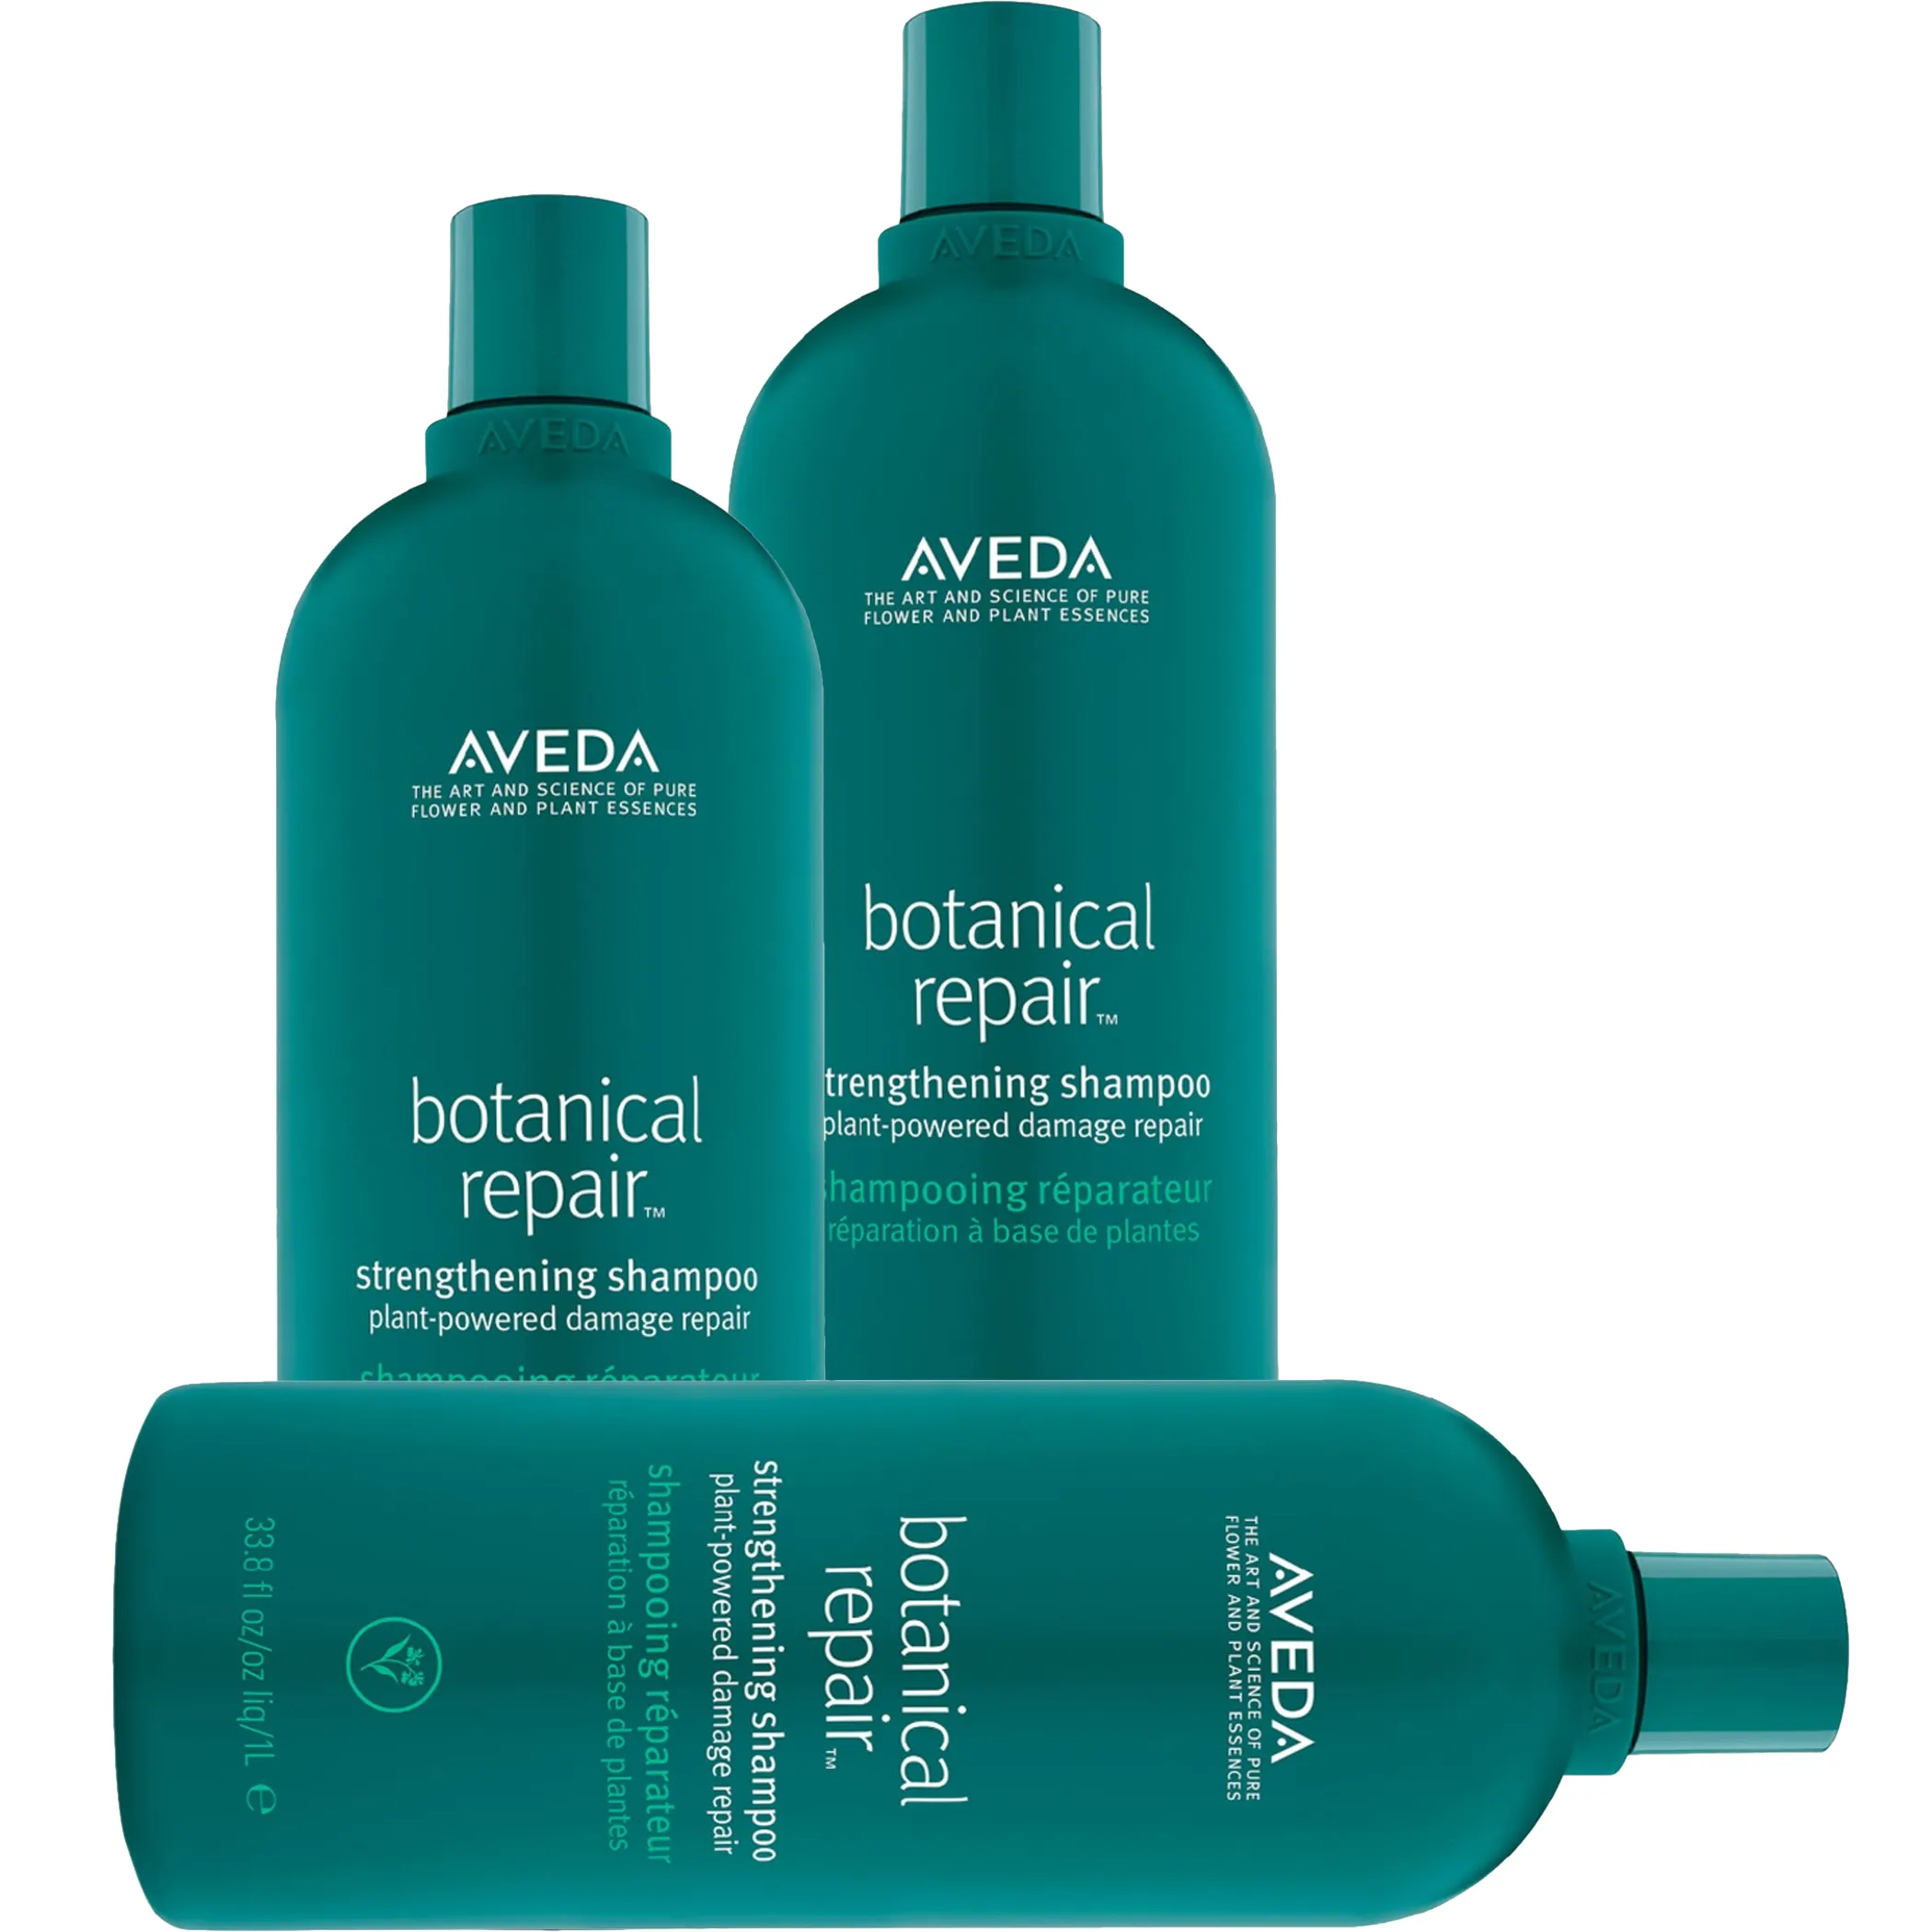 Free Aveda Botanical Hair Repair Product Samples